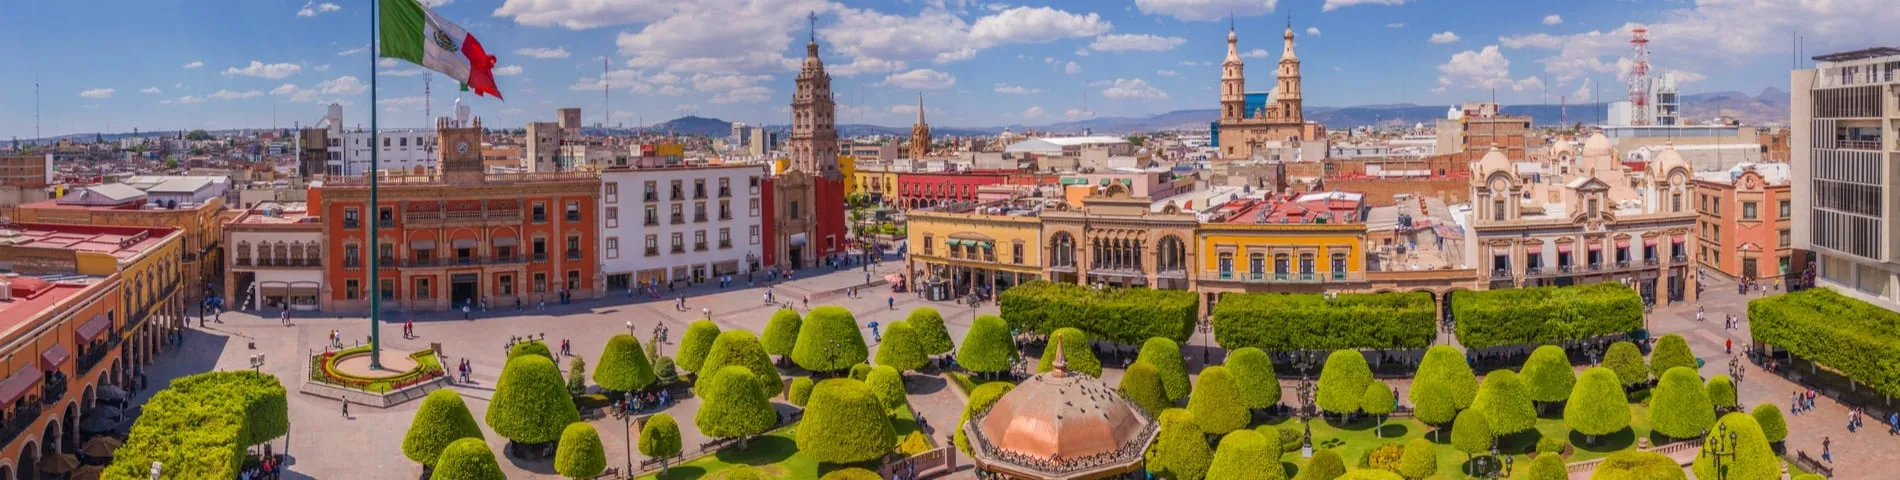 Guanajuato - Standardowy